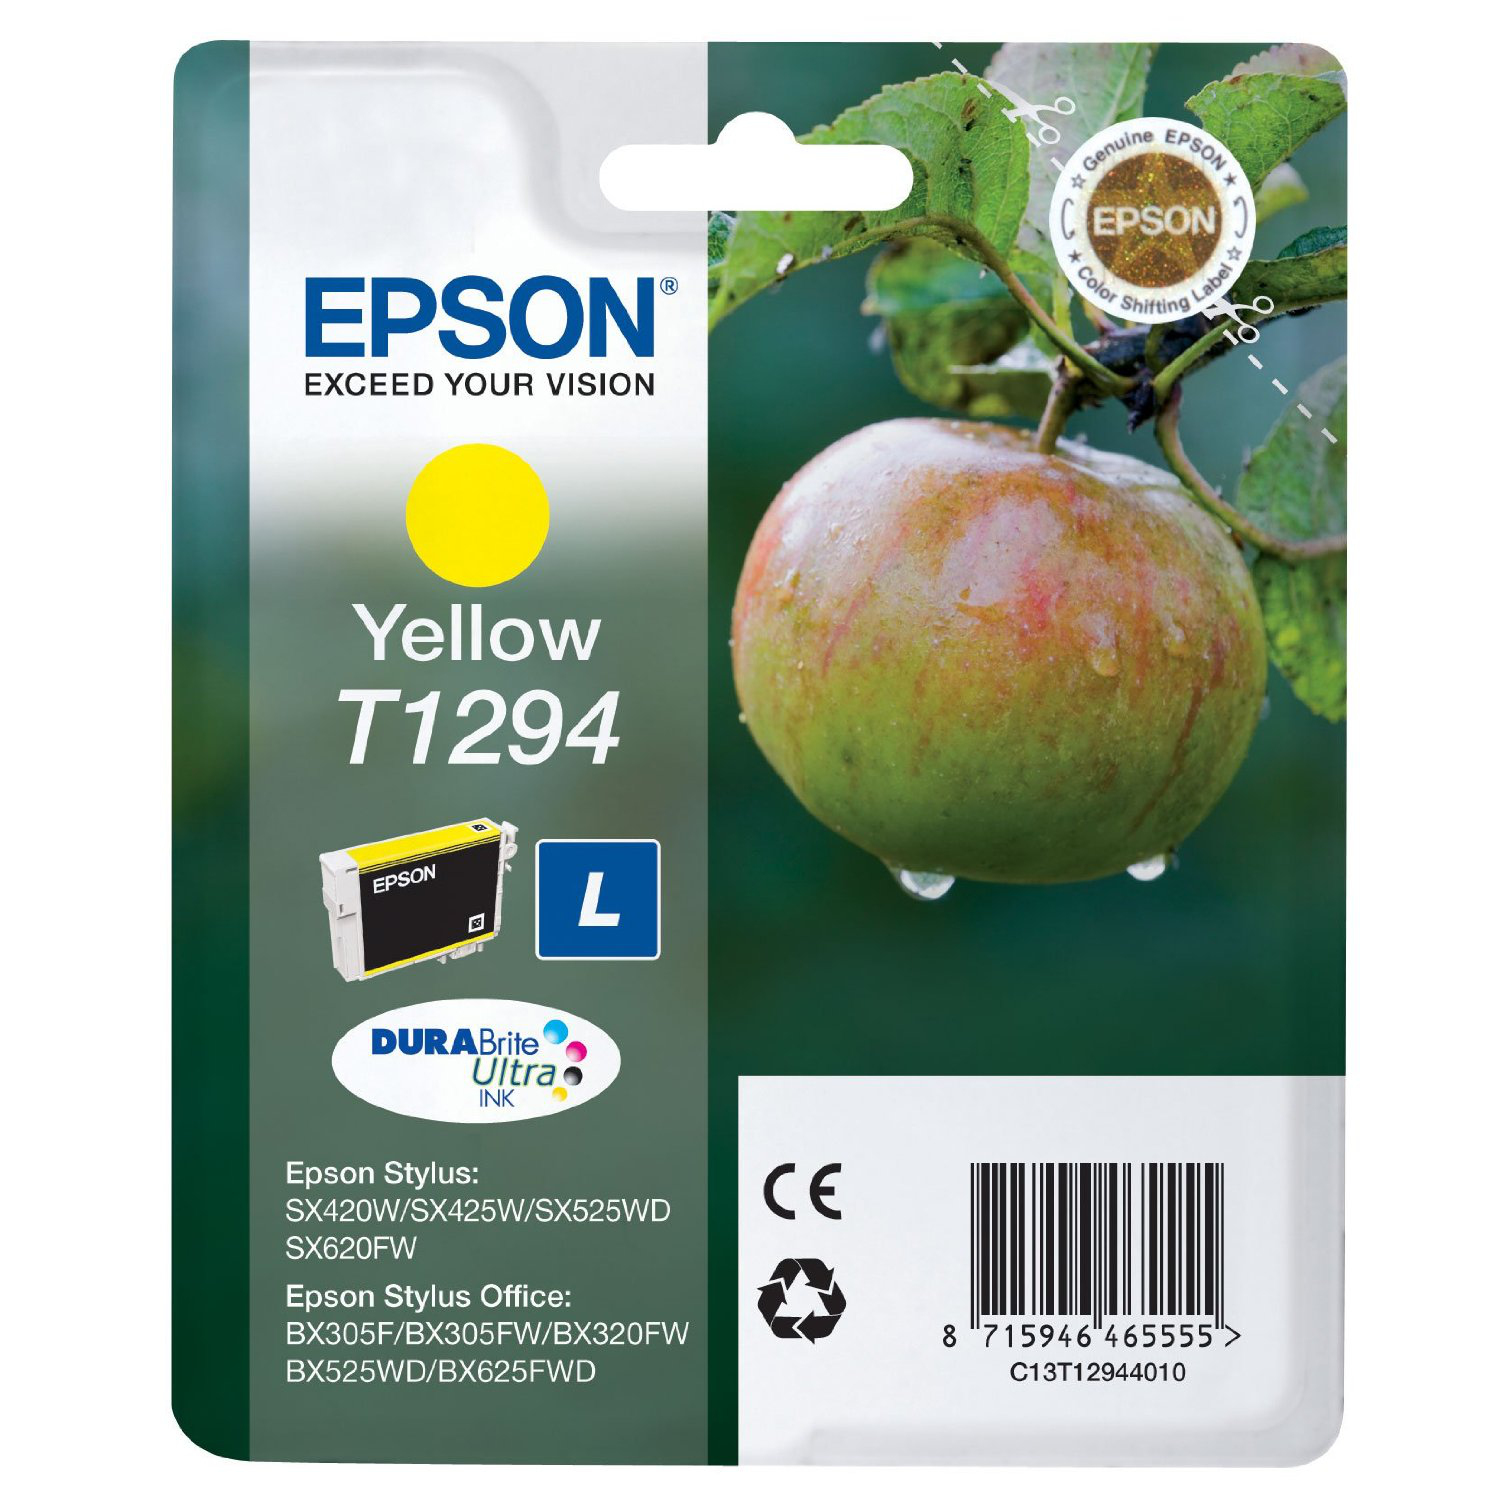 Epson inktpatroon Yellow T1294 DURABrite Ultra Ink